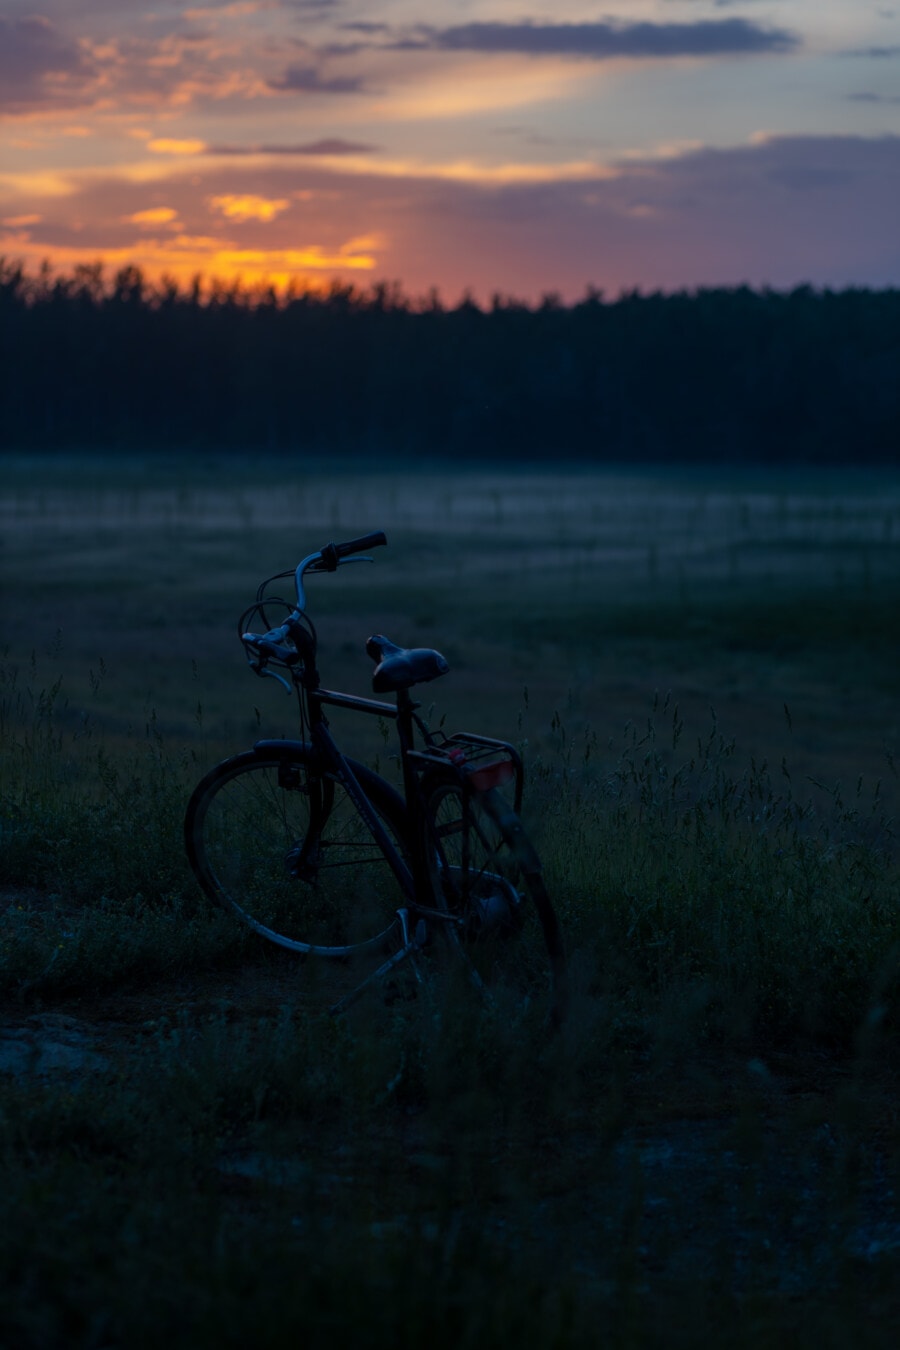 พระอาทิตย์ขึ้น, เงา, เงา, จักรยาน, ตอนเช้า, หมอก, ชนบท, ล้อ, รุ่งอรุณ, ยานพาหนะ